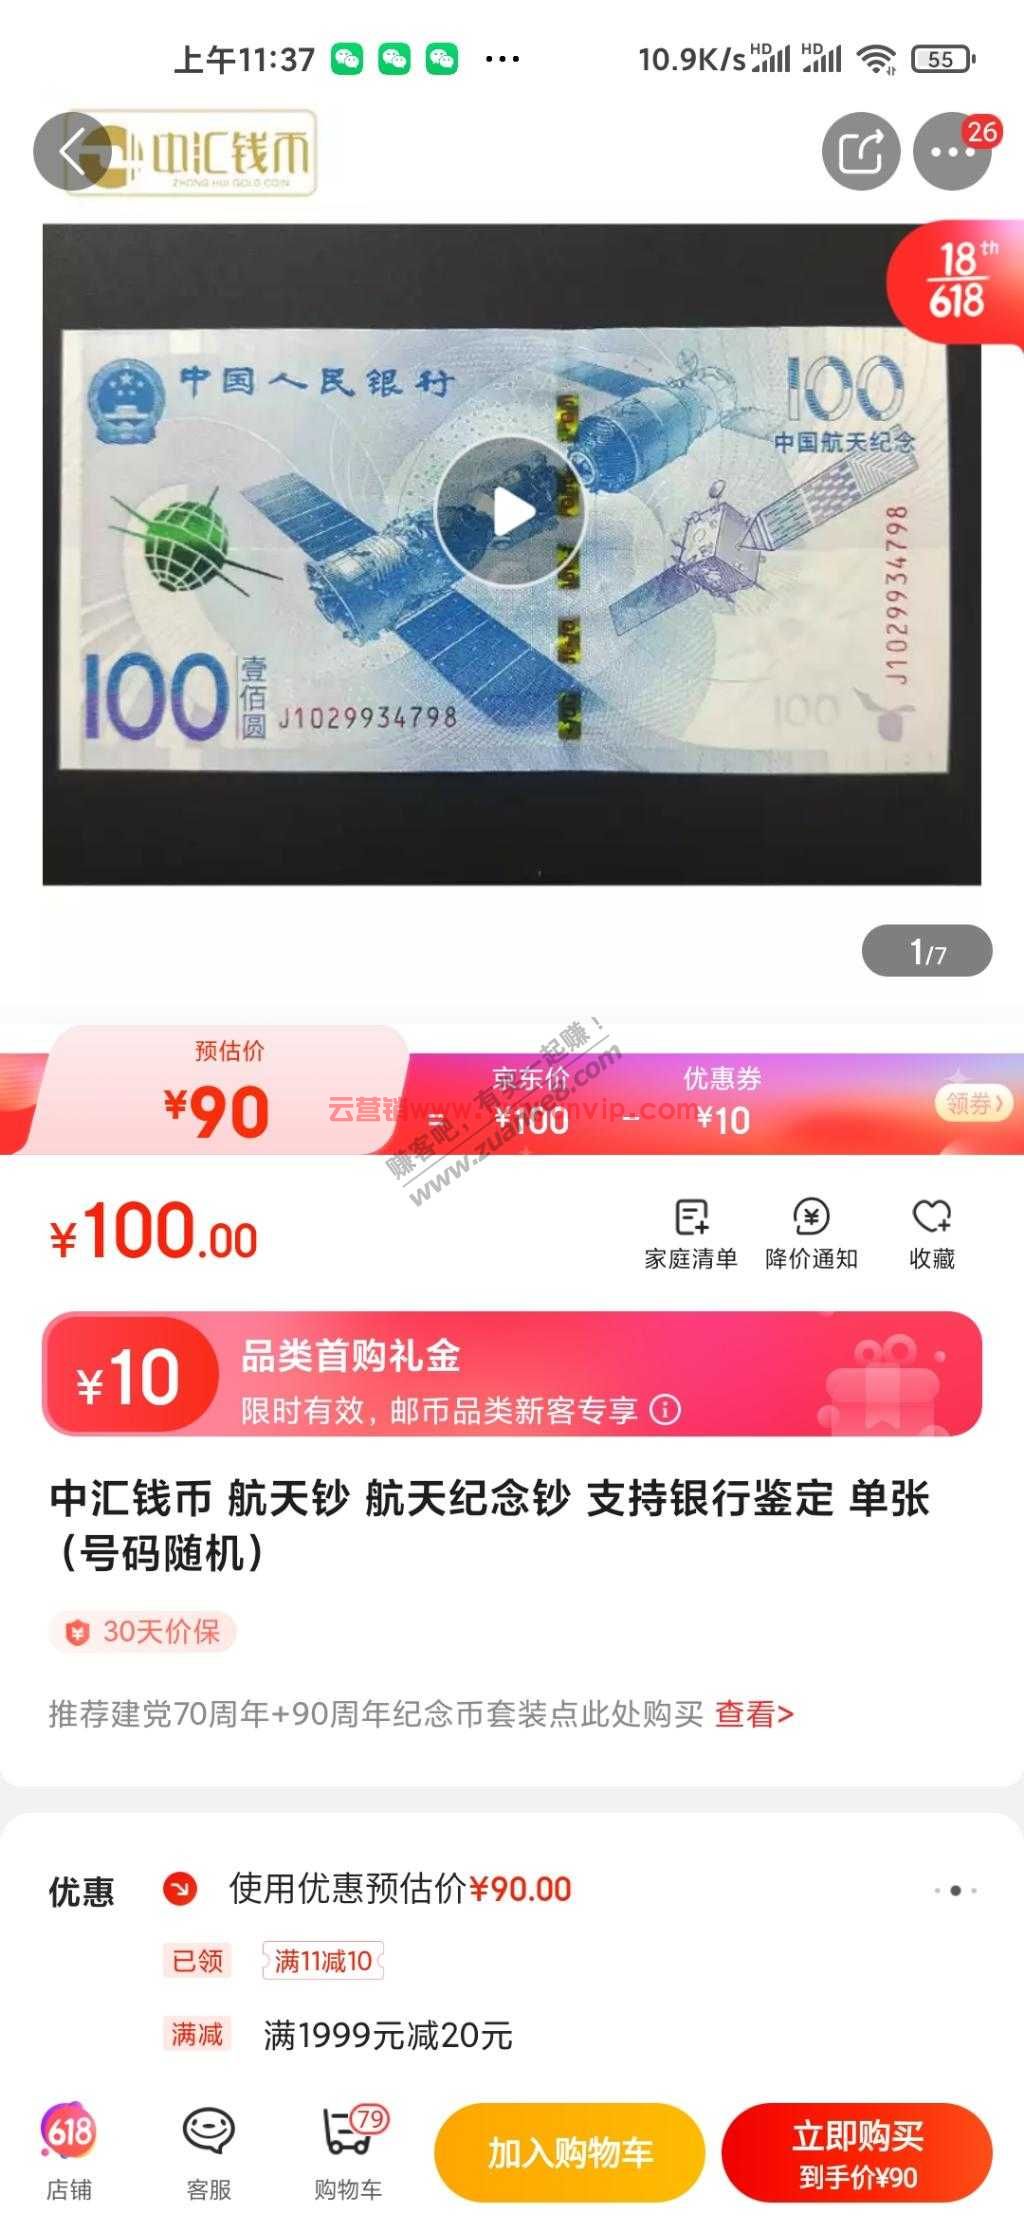 京东航天币100，首购礼-10，可套京东红包。 (图1)